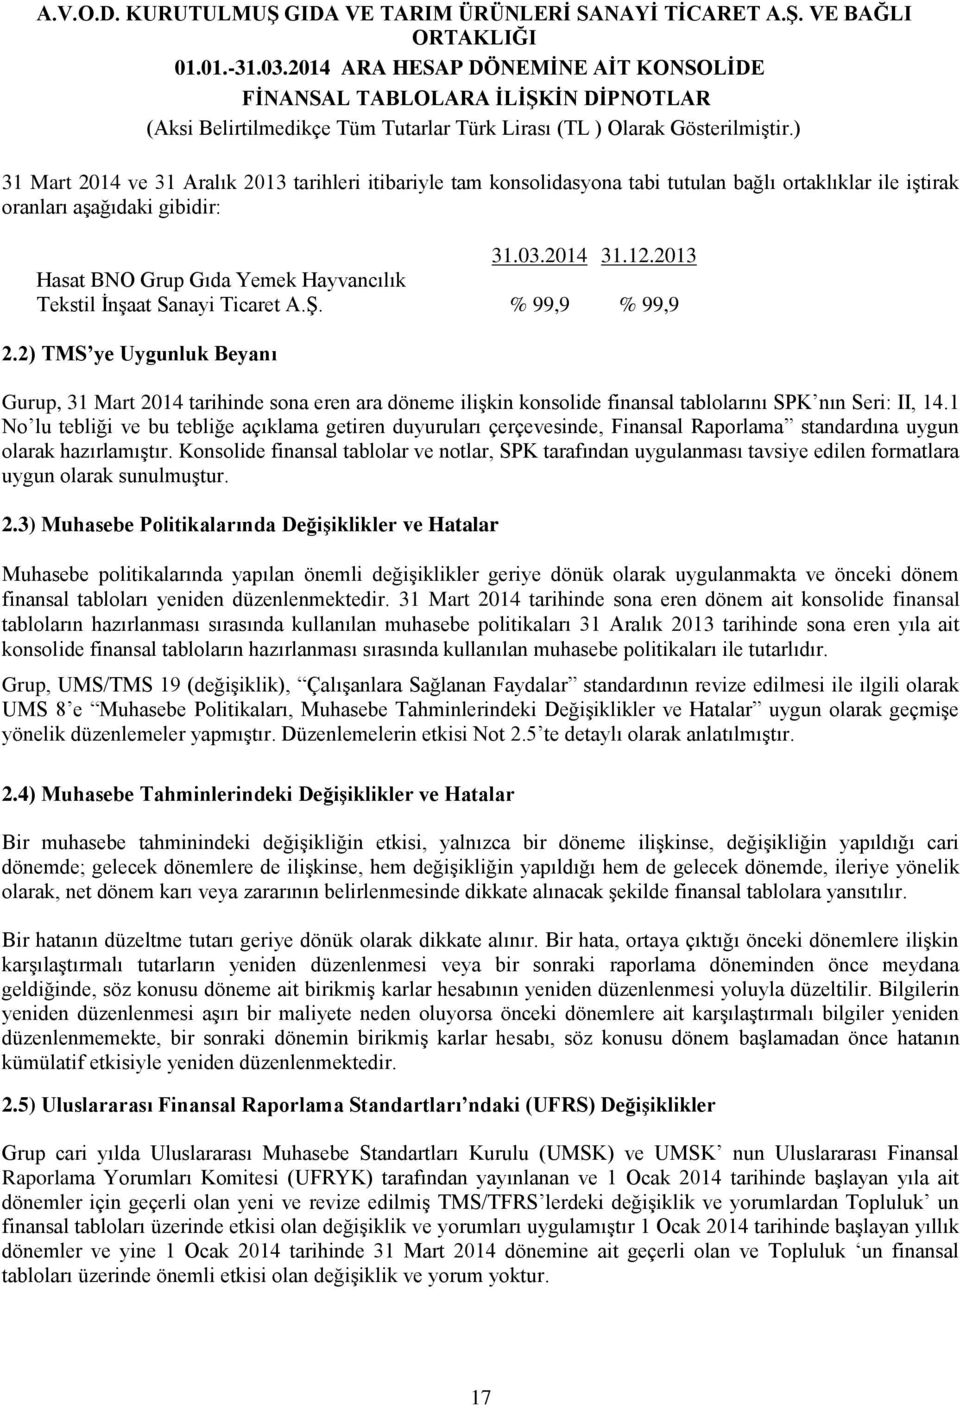 2) TMS ye Uygunluk Beyanı Gurup, 31 Mart 2014 tarihinde sona eren ara döneme ilişkin konsolide finansal tablolarını SPK nın Seri: II, 14.